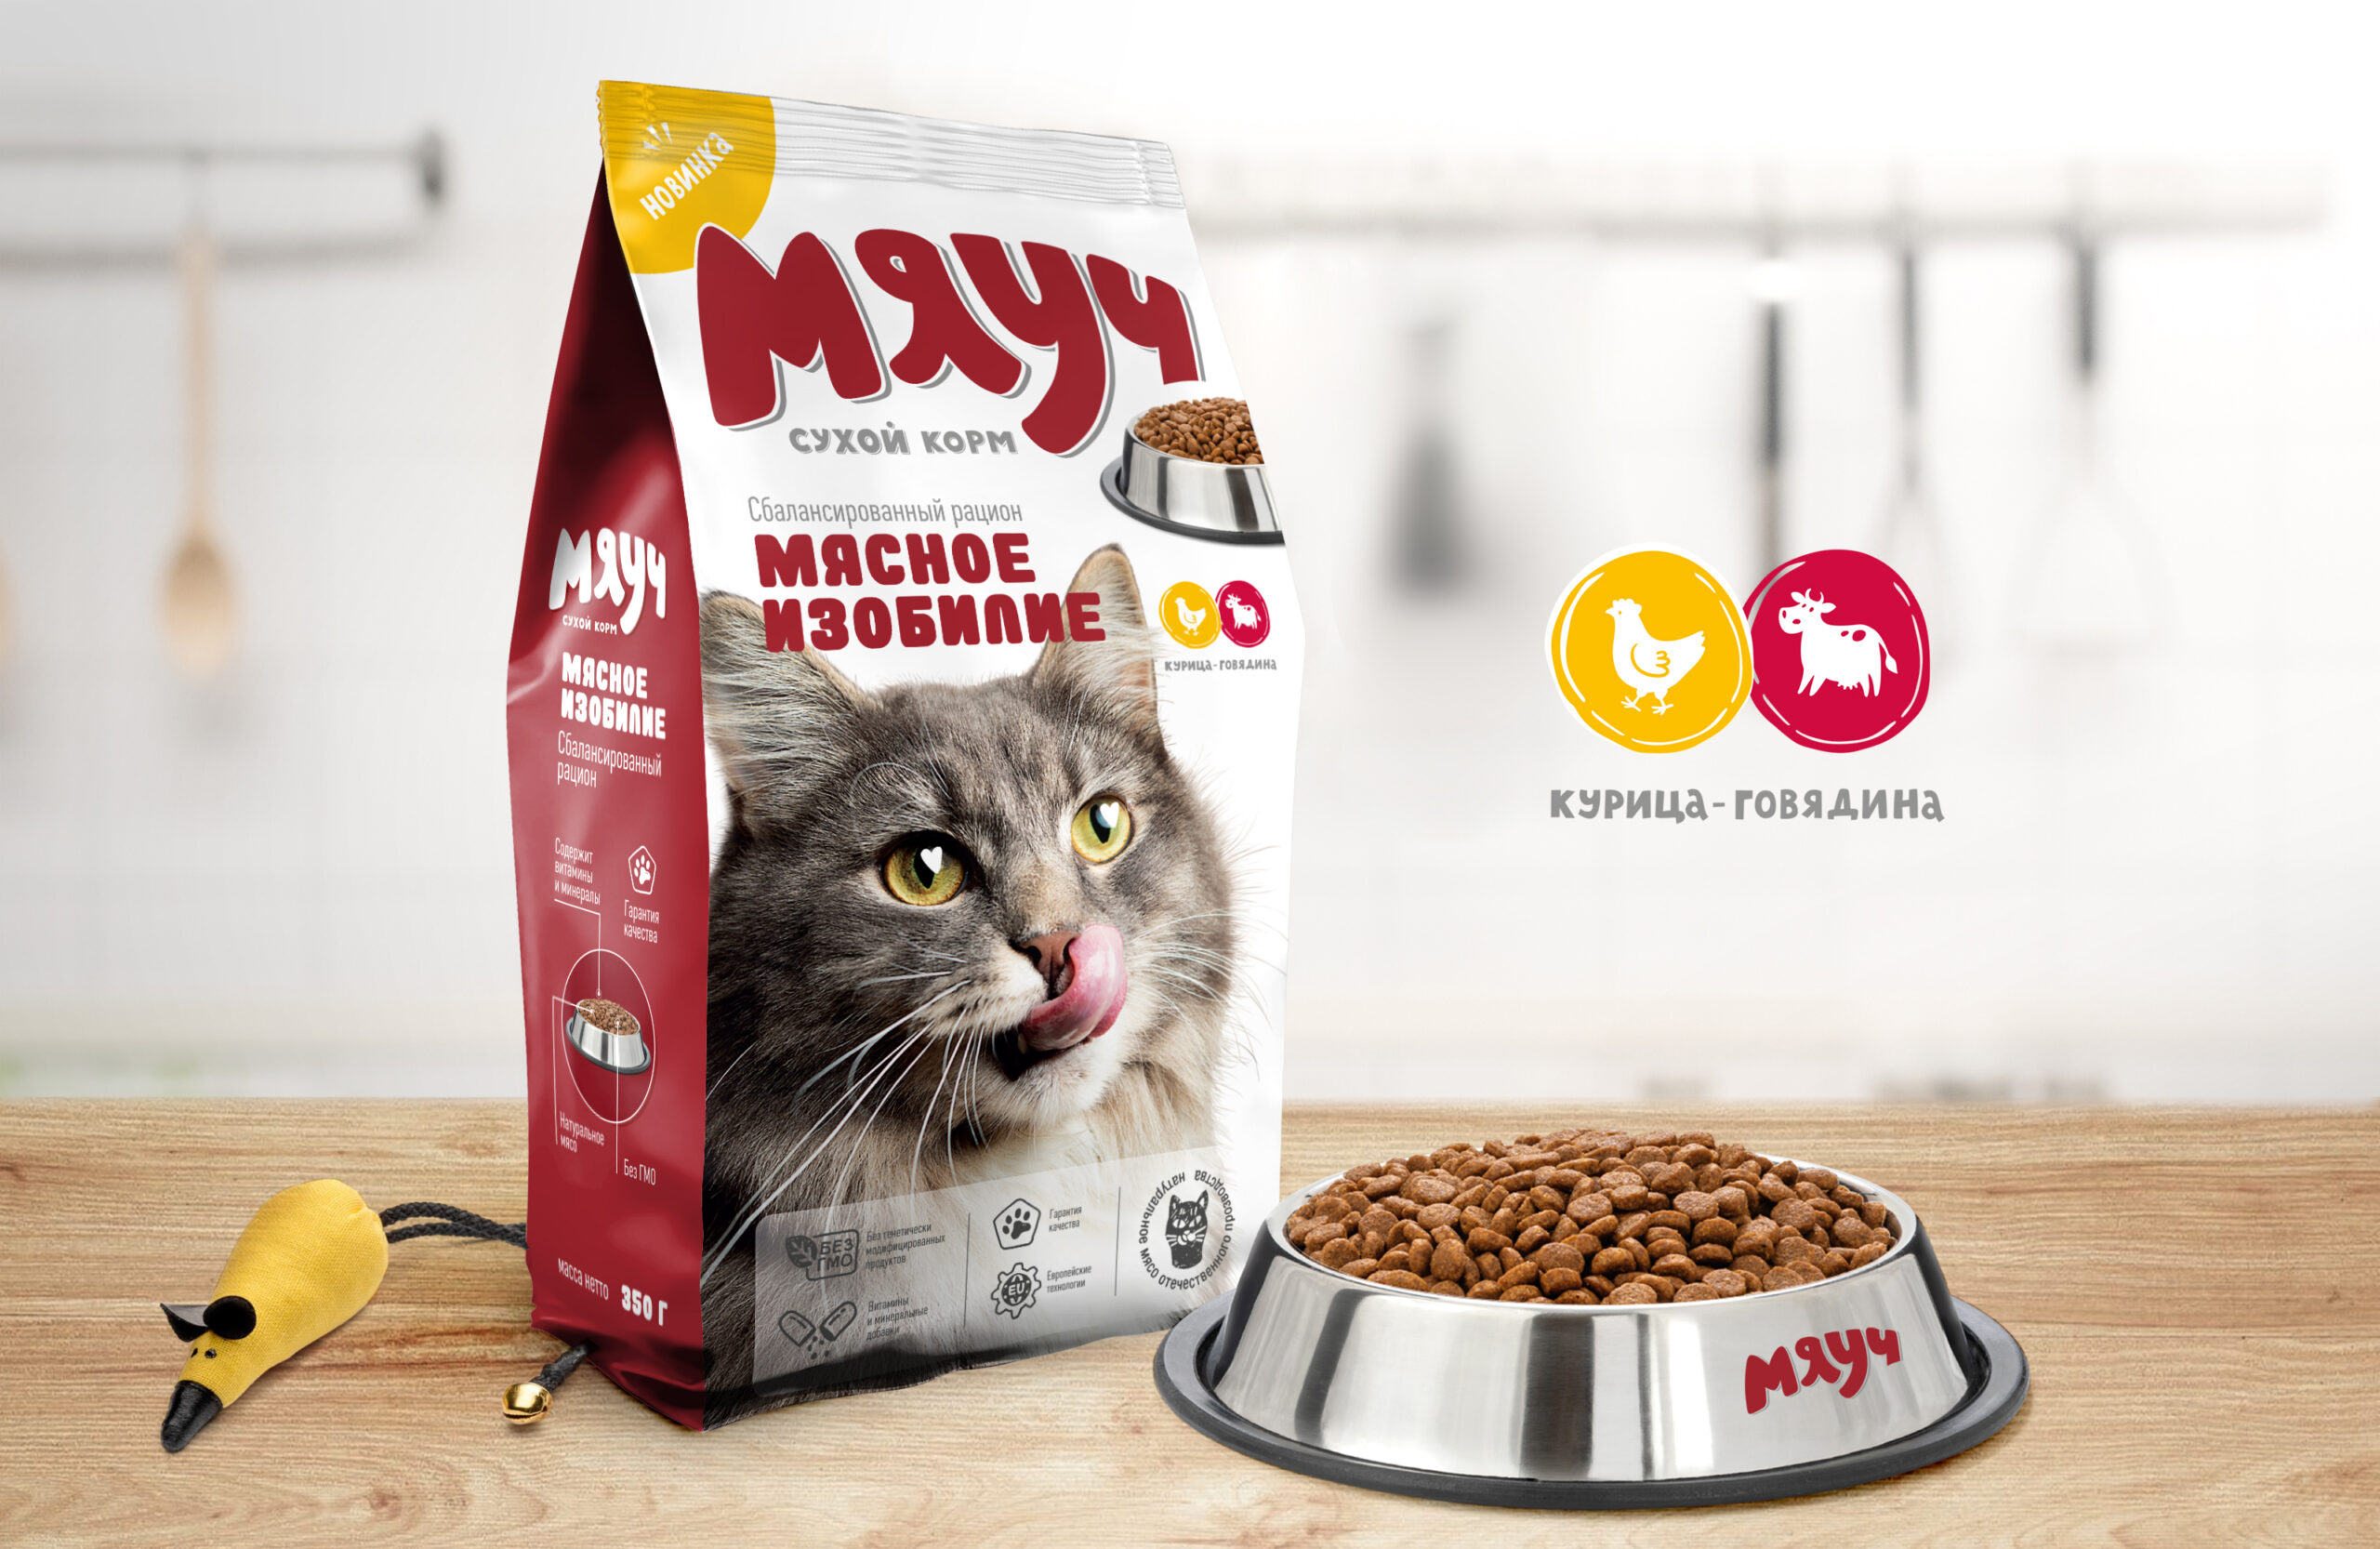 Дизайн упаковки линейки кошачьего корма «Мяуч»